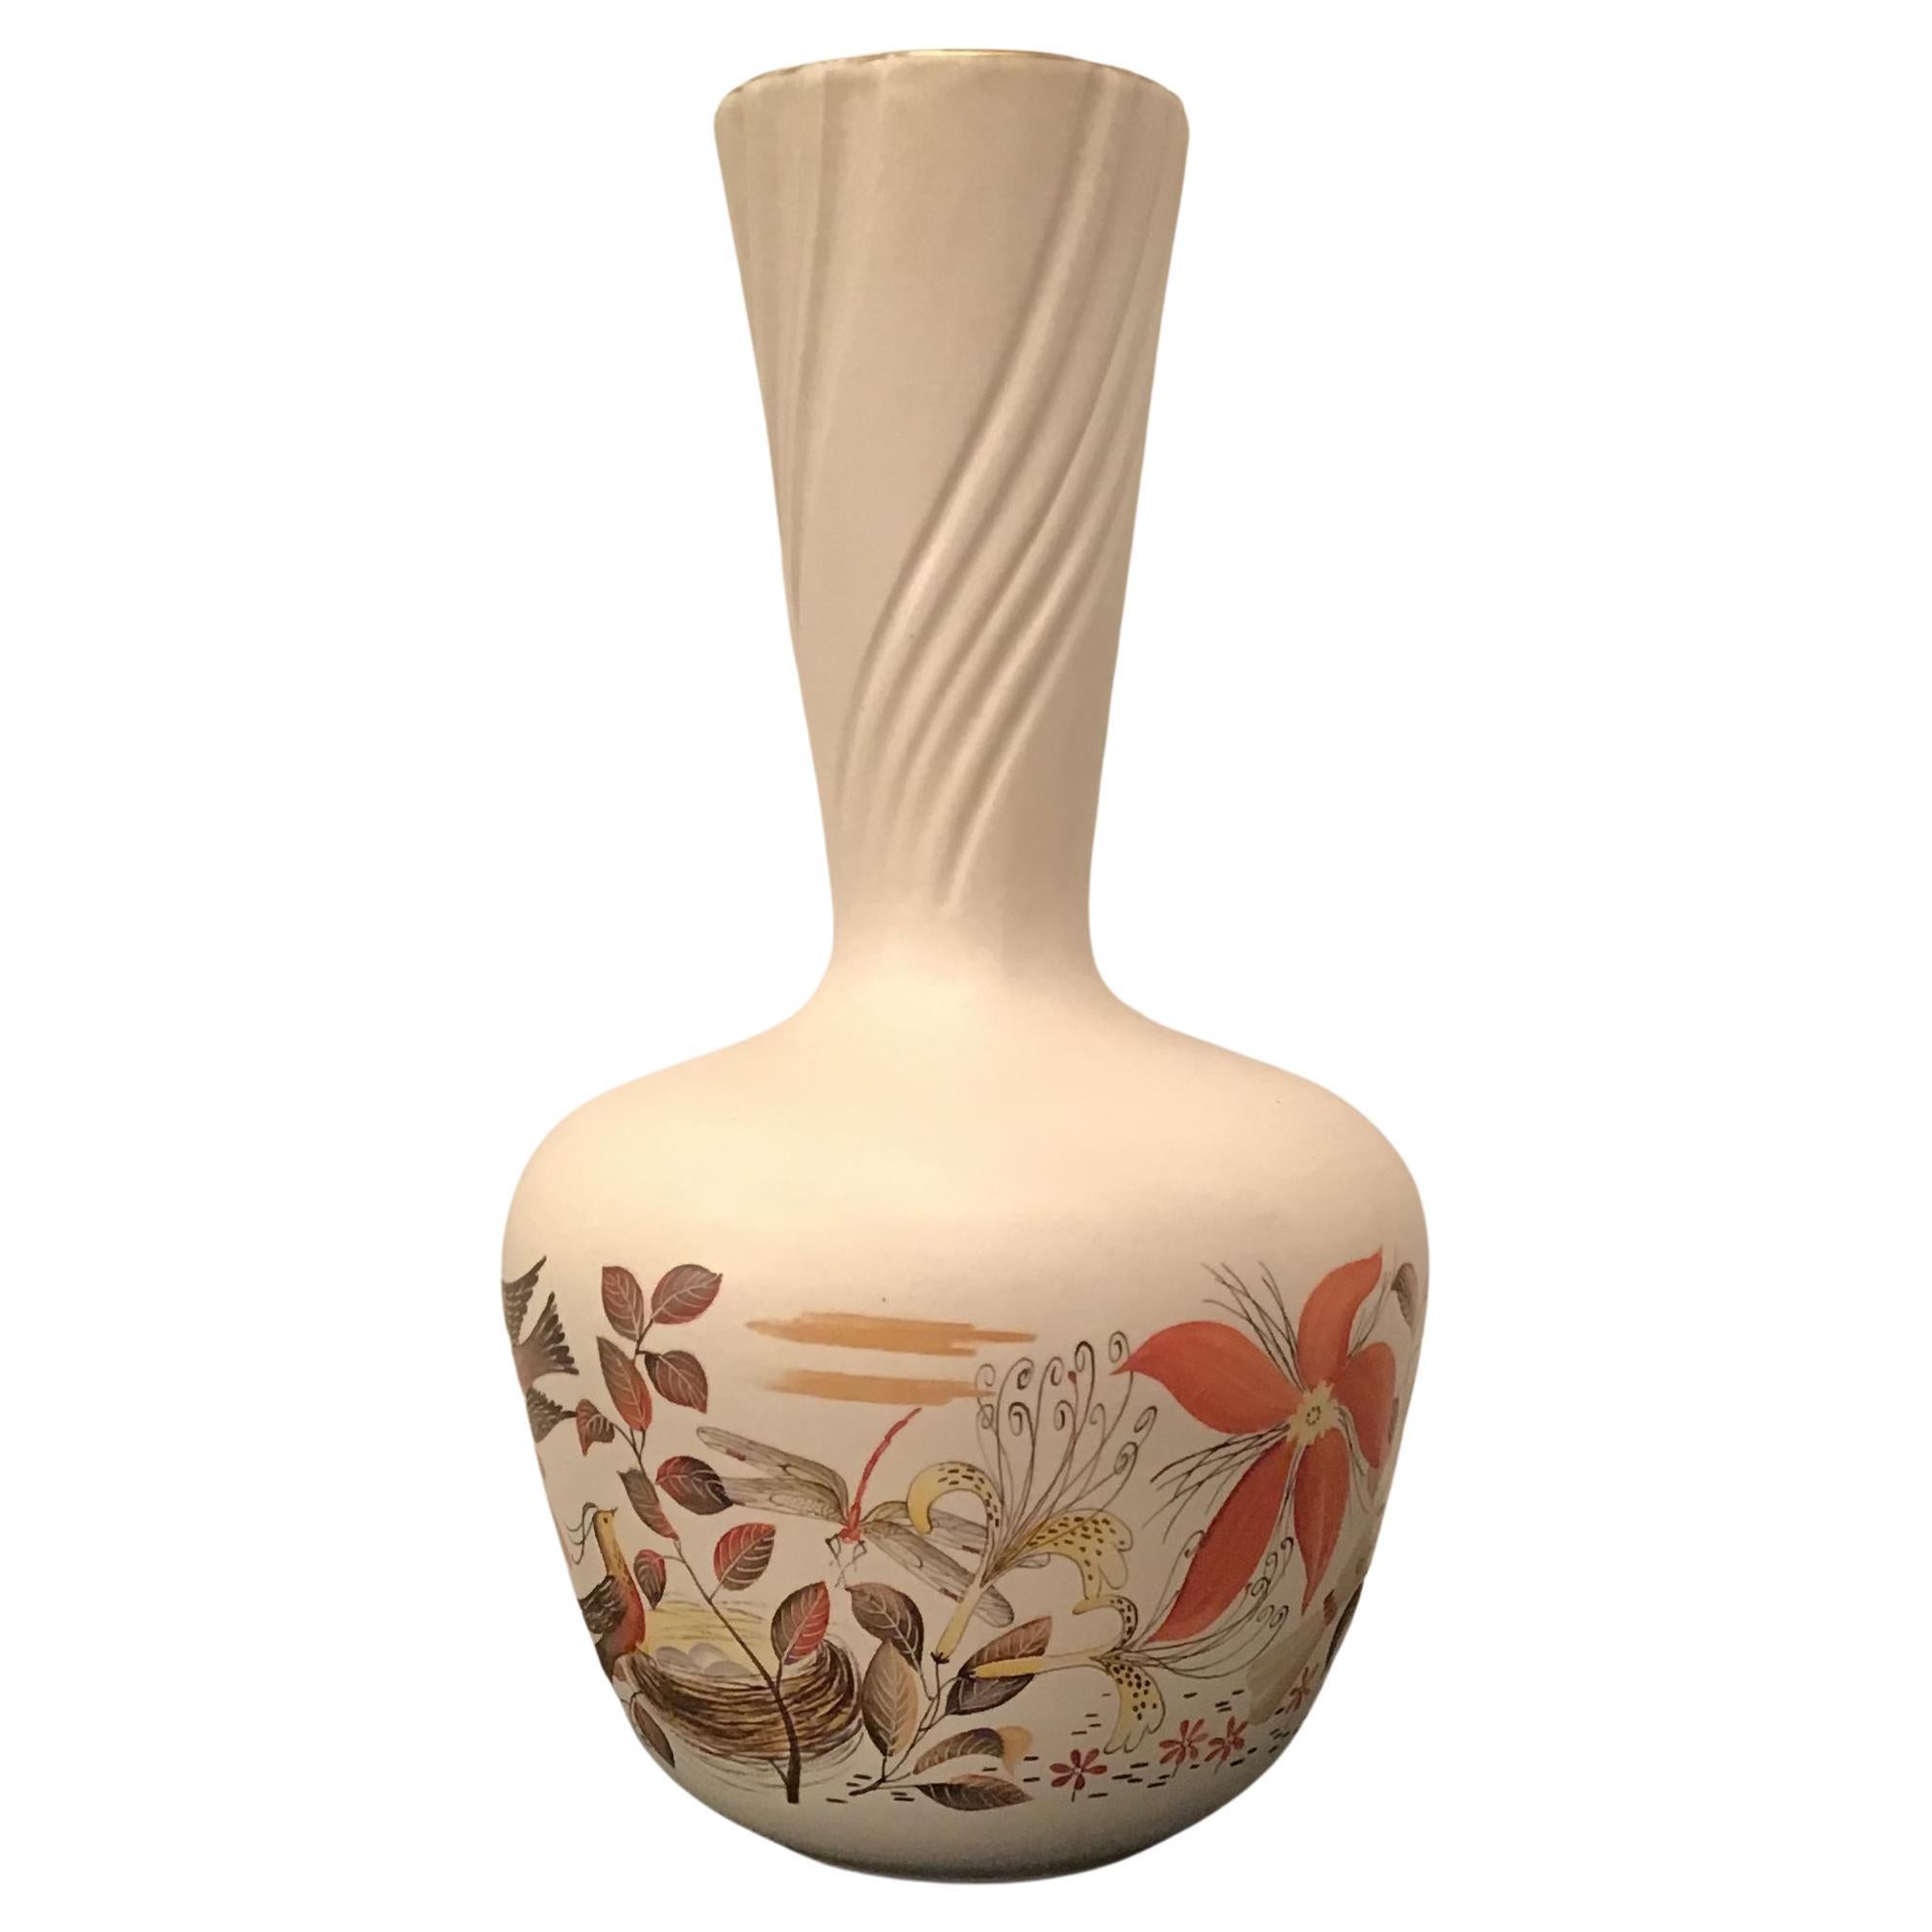 Richard Ginori “Giovanni Gariboldi “ Ceramic Vase 1950 Italy 